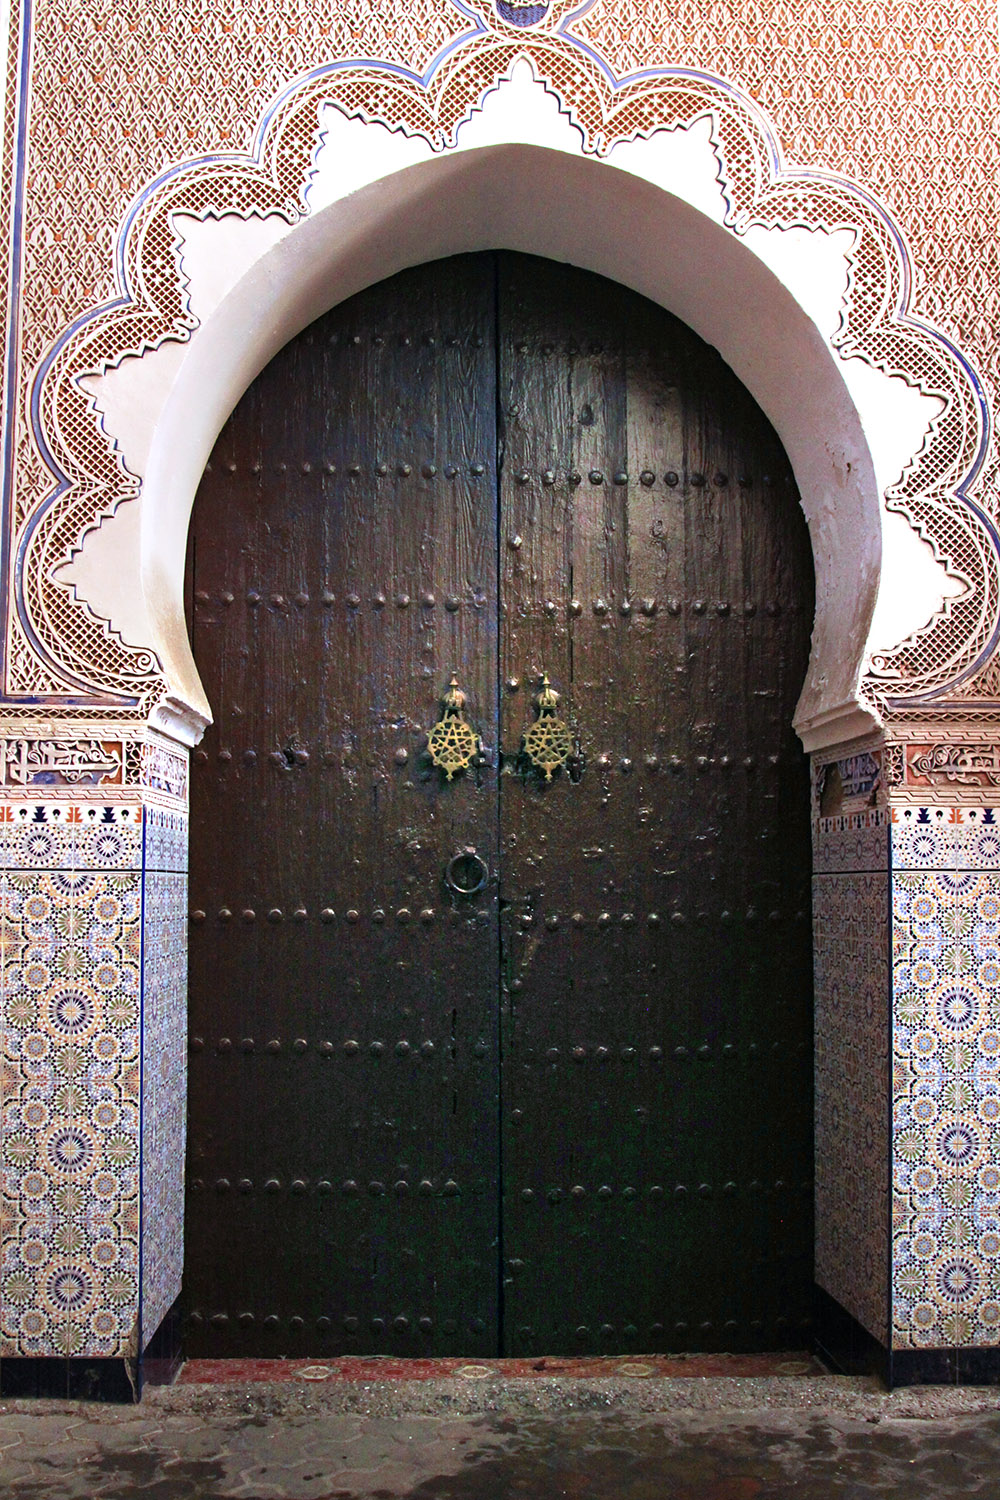 morocco/ali_ben_youseff_medersa_angled_door